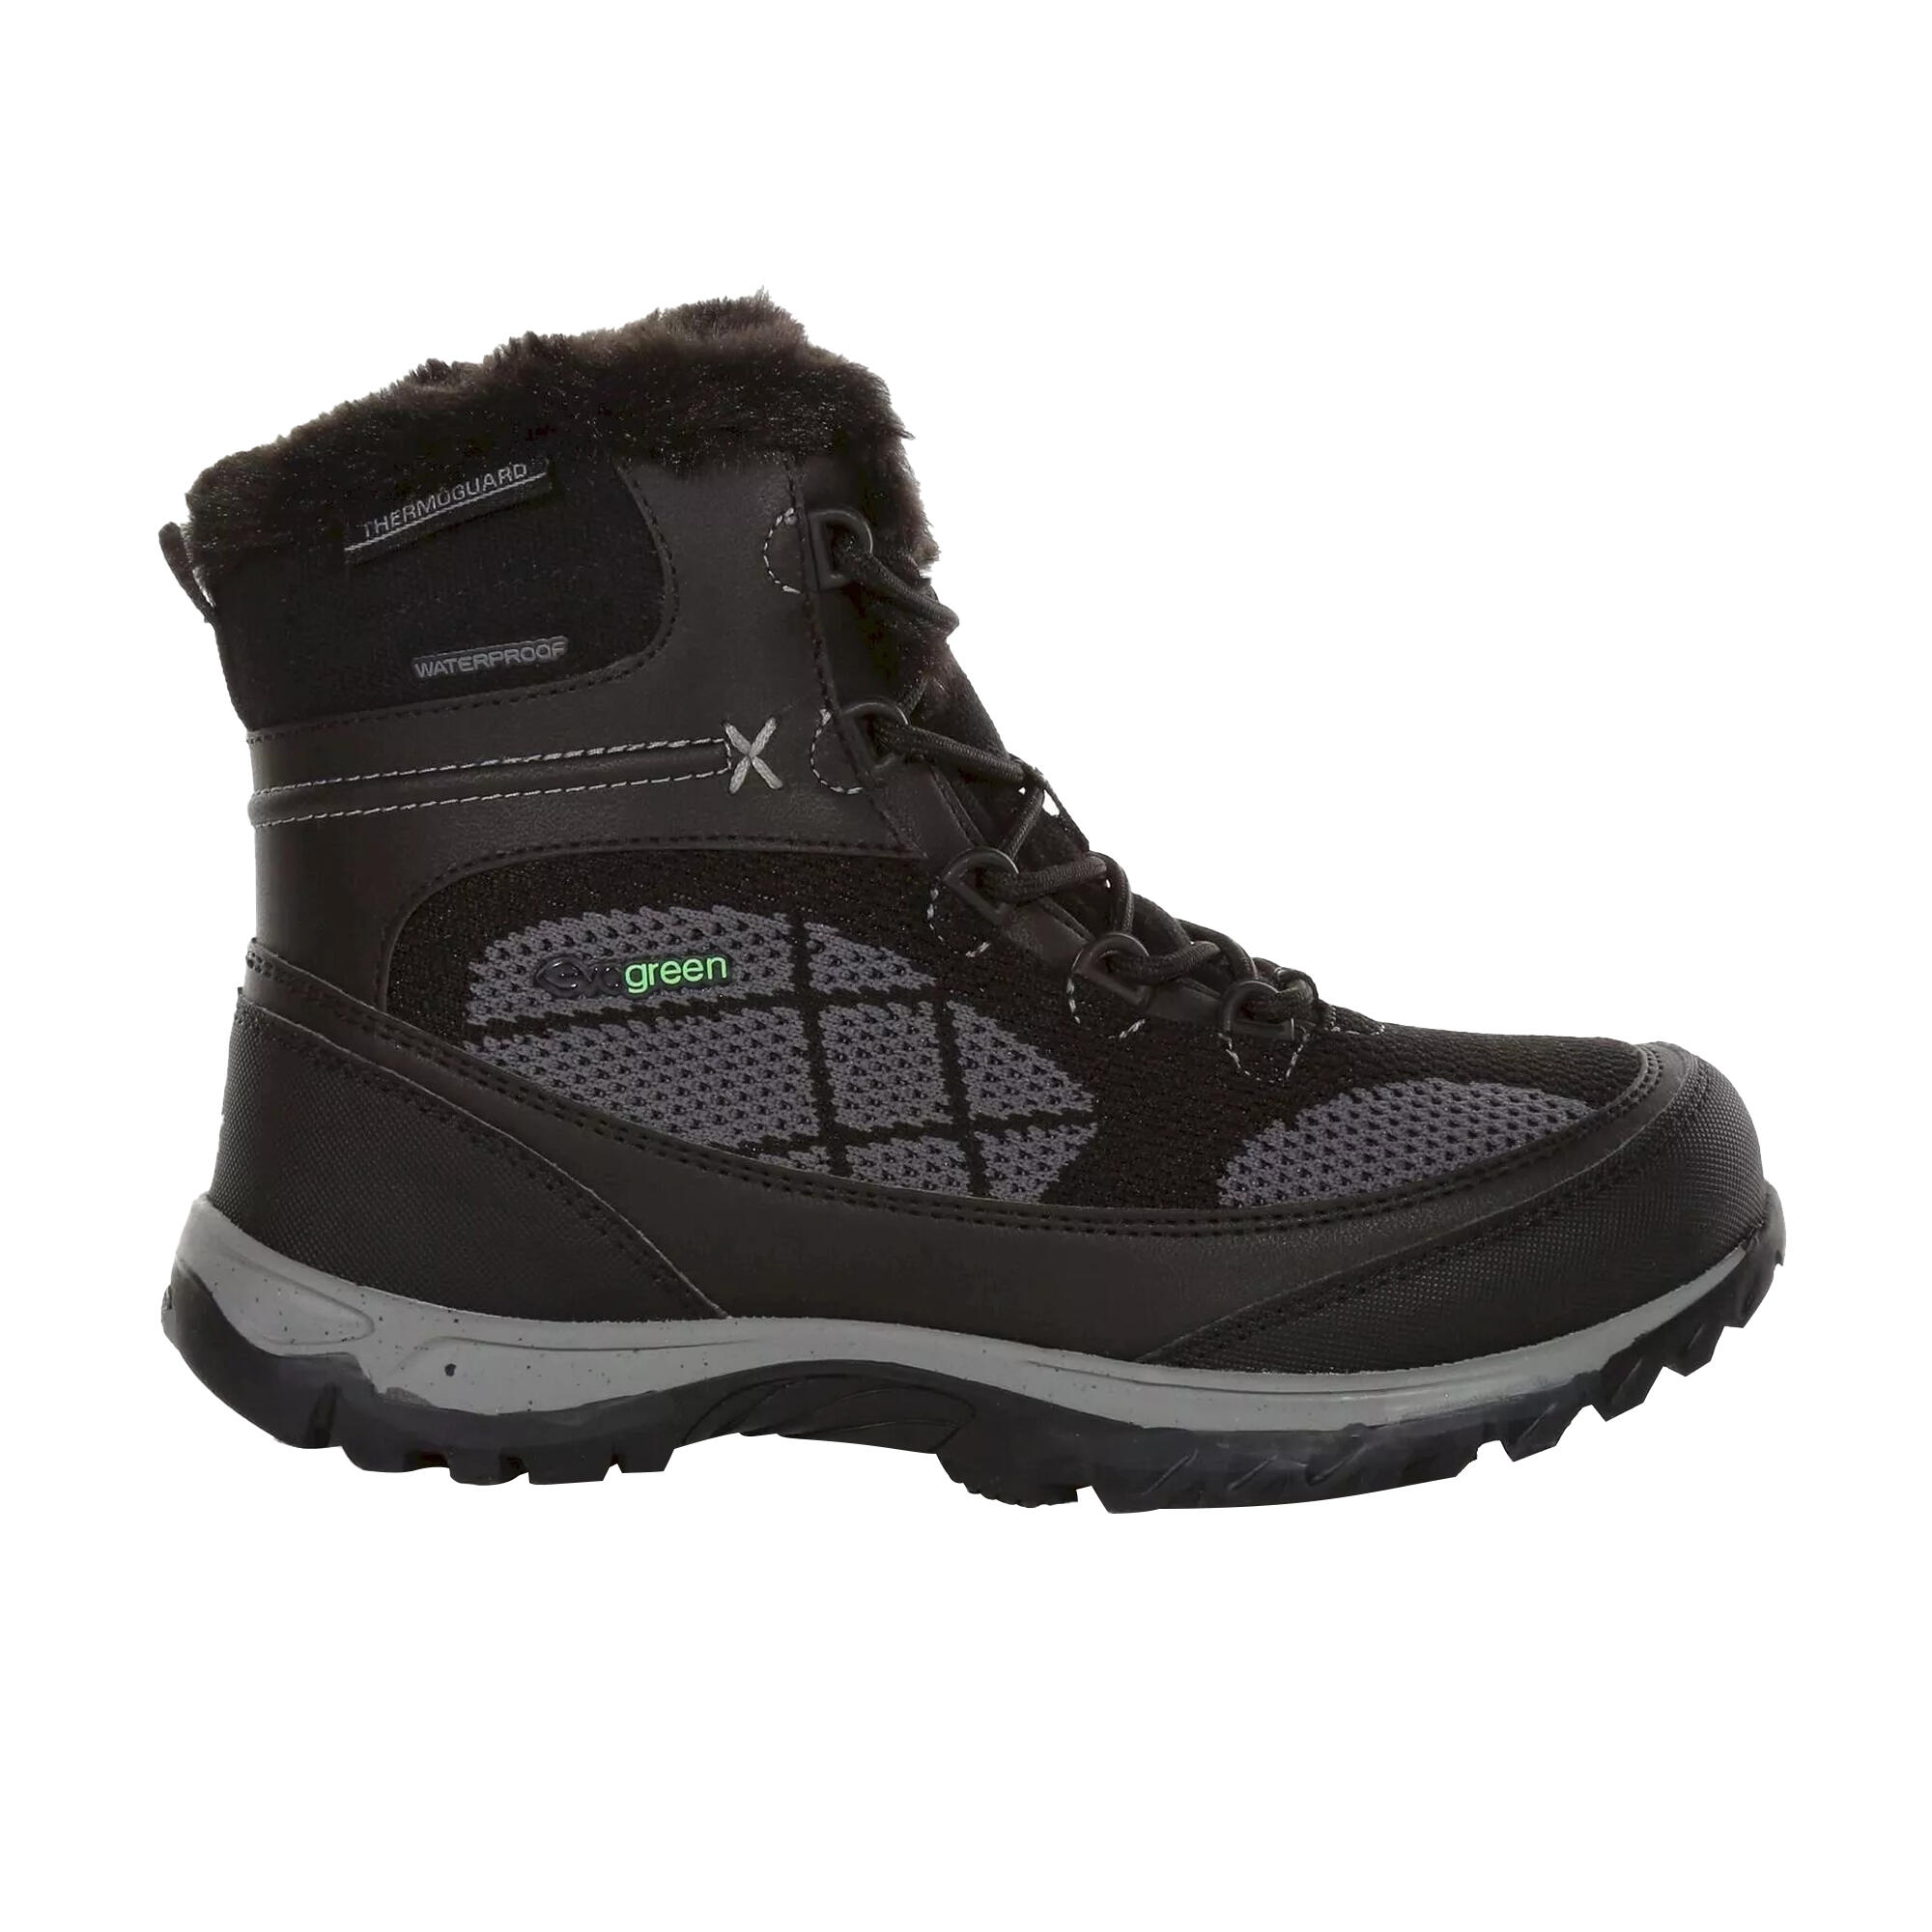 REGATTA Womens/Ladies Hawthorn Evo Walking Boots (Black/Granite)